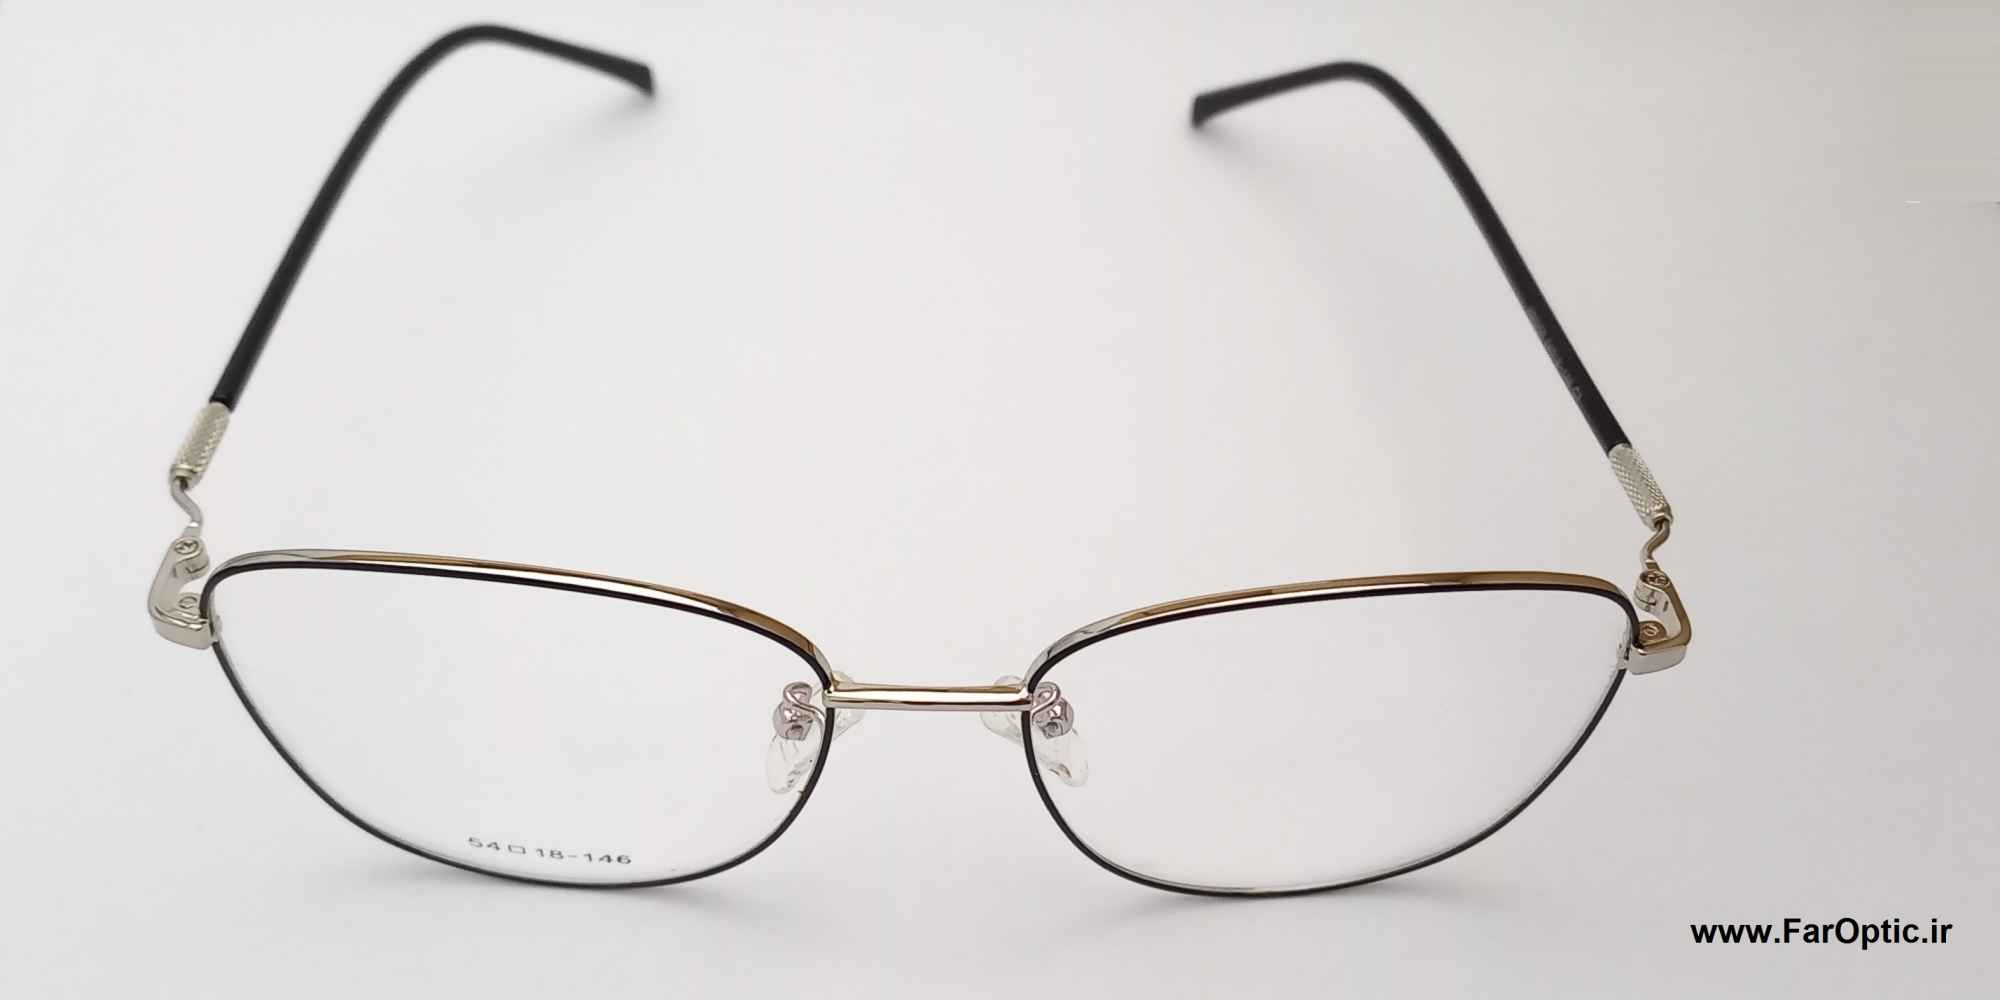 فریم عینک طبی فراپتیک 90250